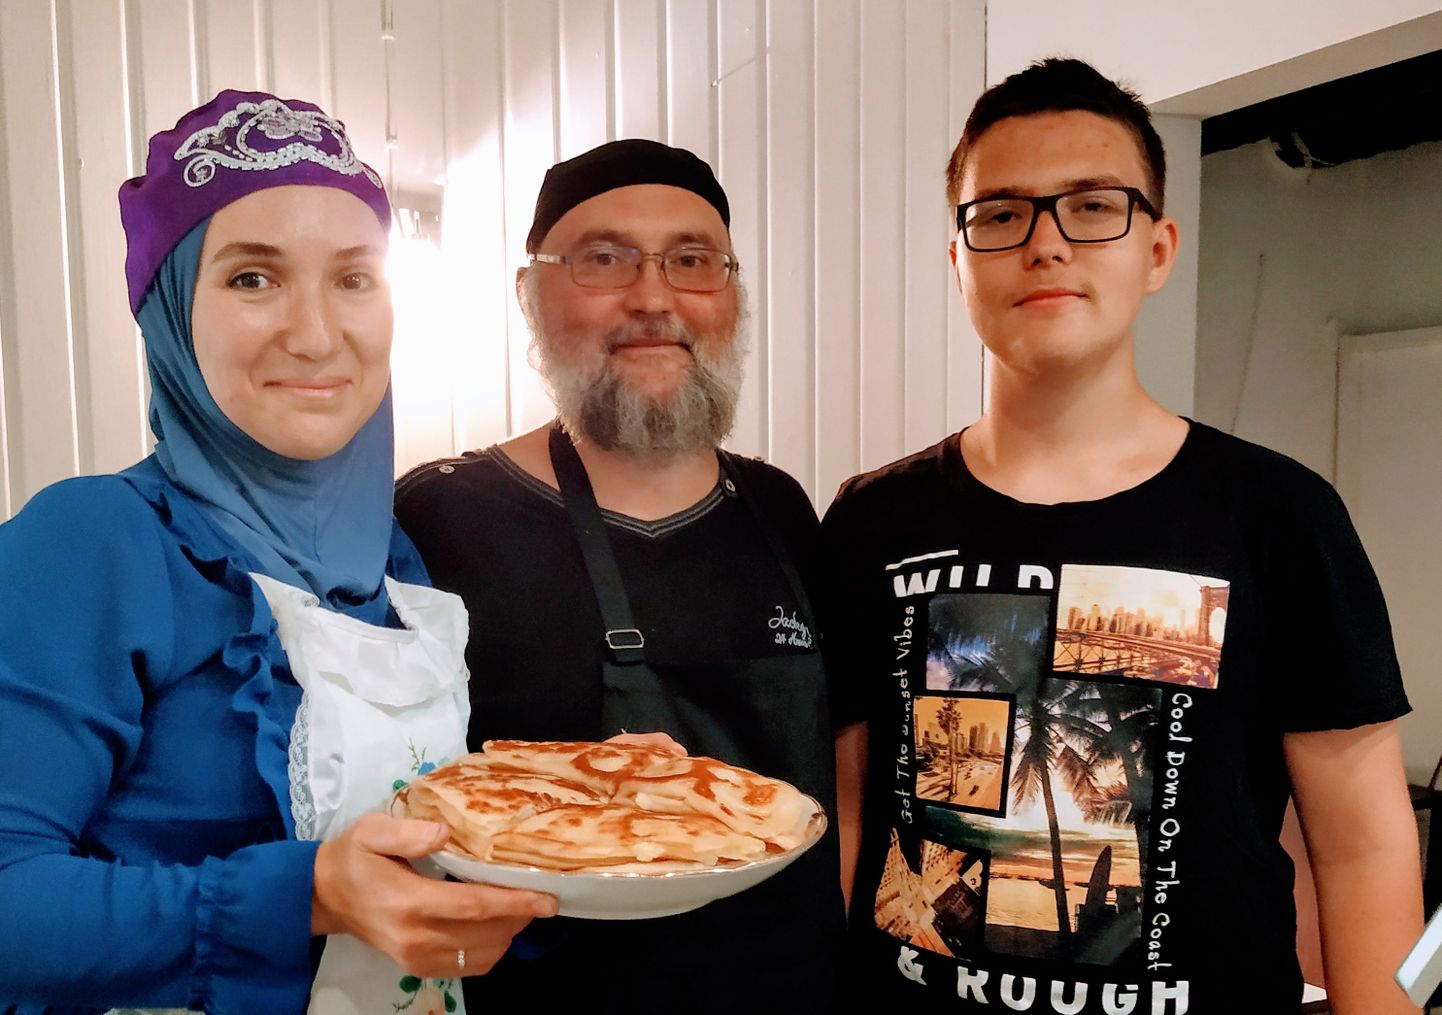 Лия, Ильдар и Ахмет вчера открыли в центре Таллинна чайхану -  семейный ресторанчик татарской кухни.